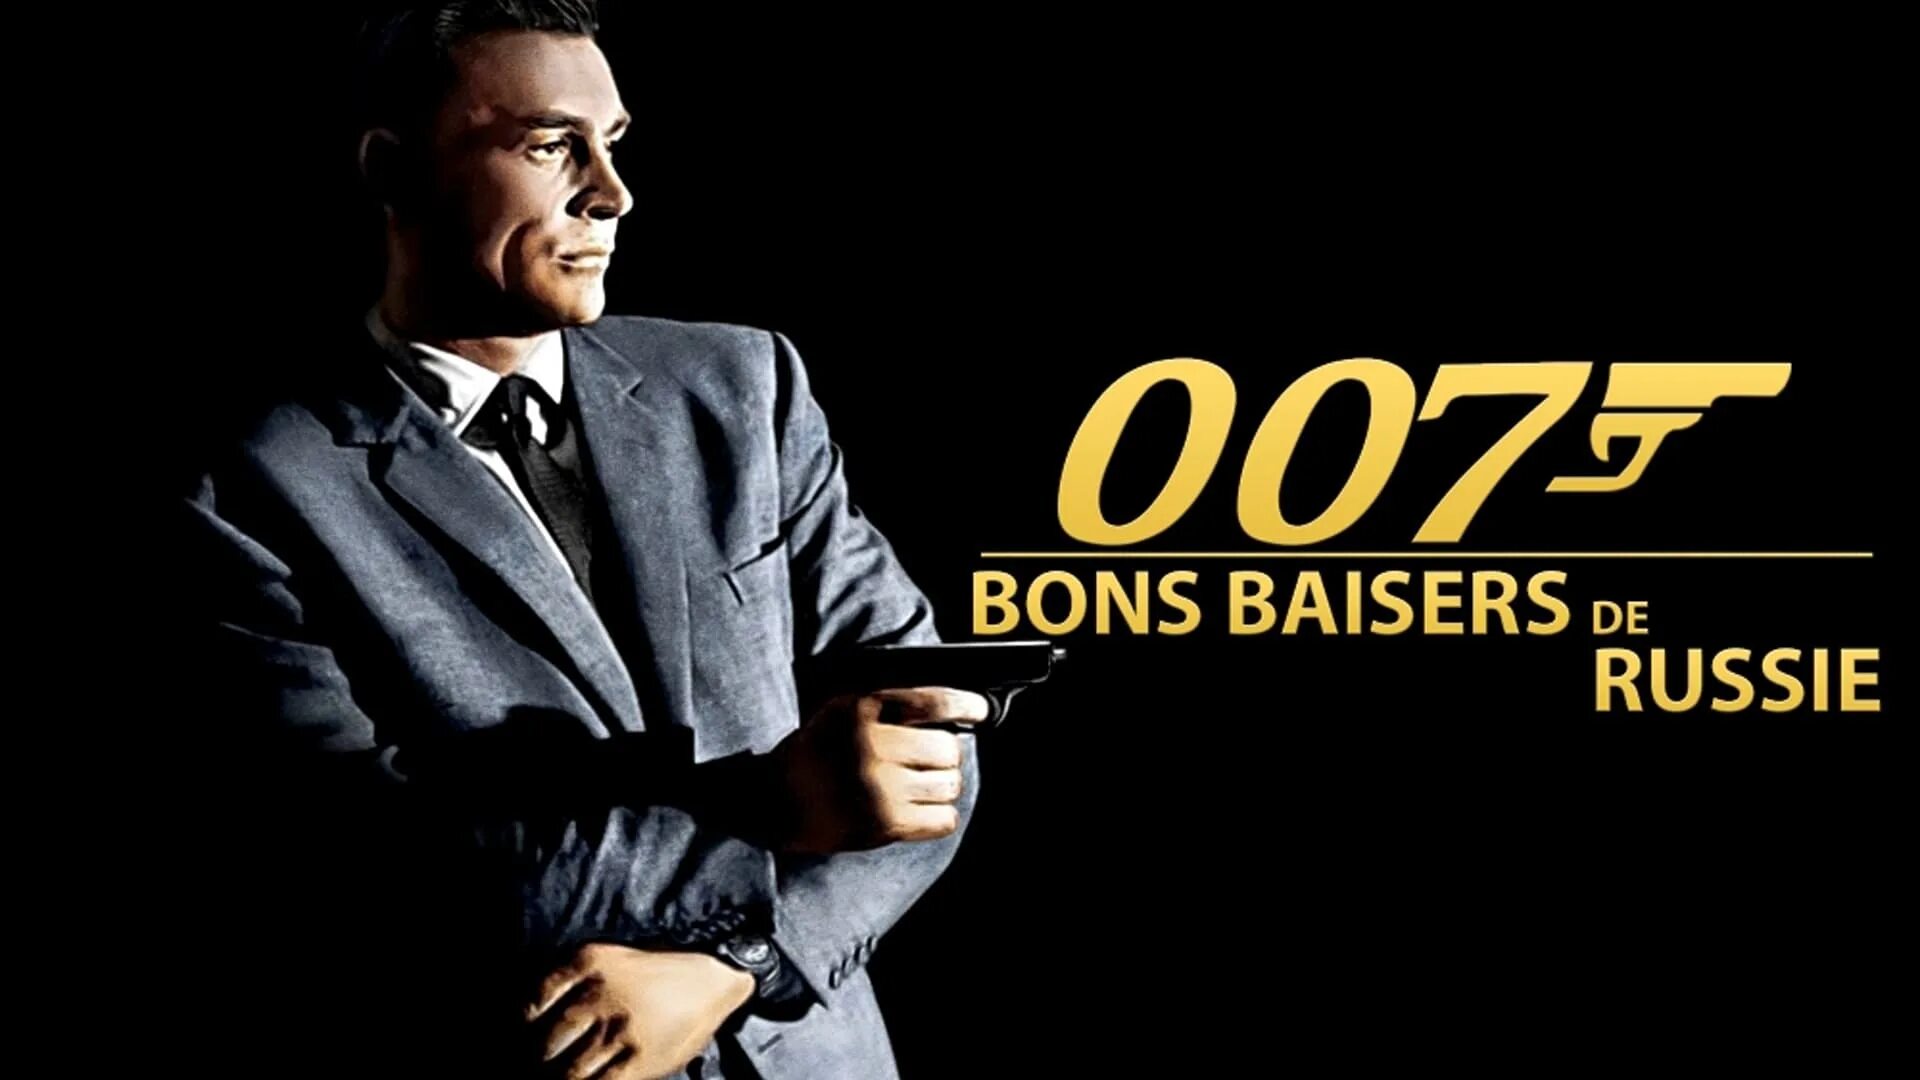 Агент 007 из России с любовью. Агент 007 обложка. 007 from russia with love